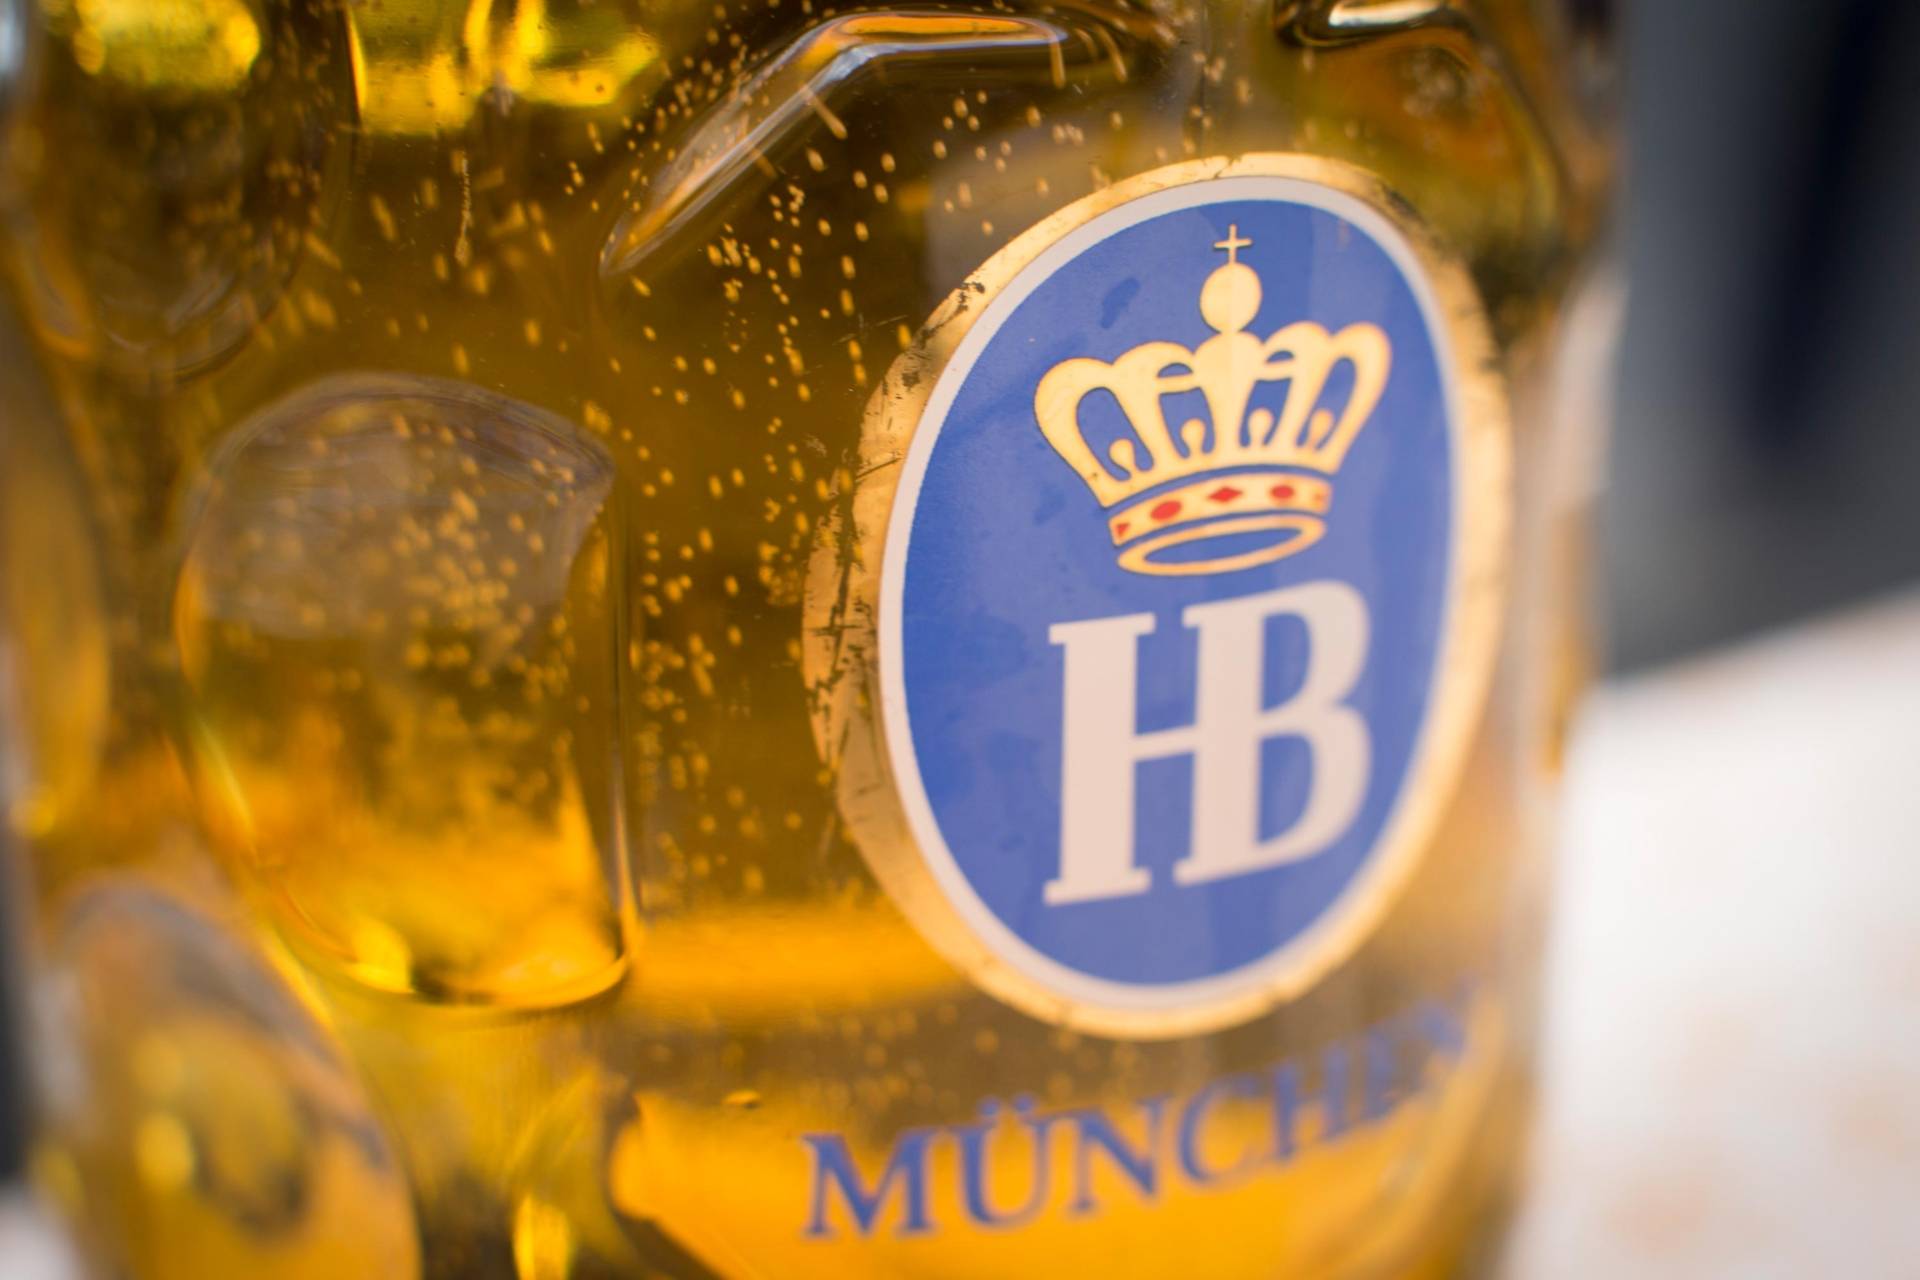 Пиво hofbrau munchen. Хофброй пиво. Хофброй Мюнхен Вайс. Бокал Хофброй. Хофбройхаус пиво.